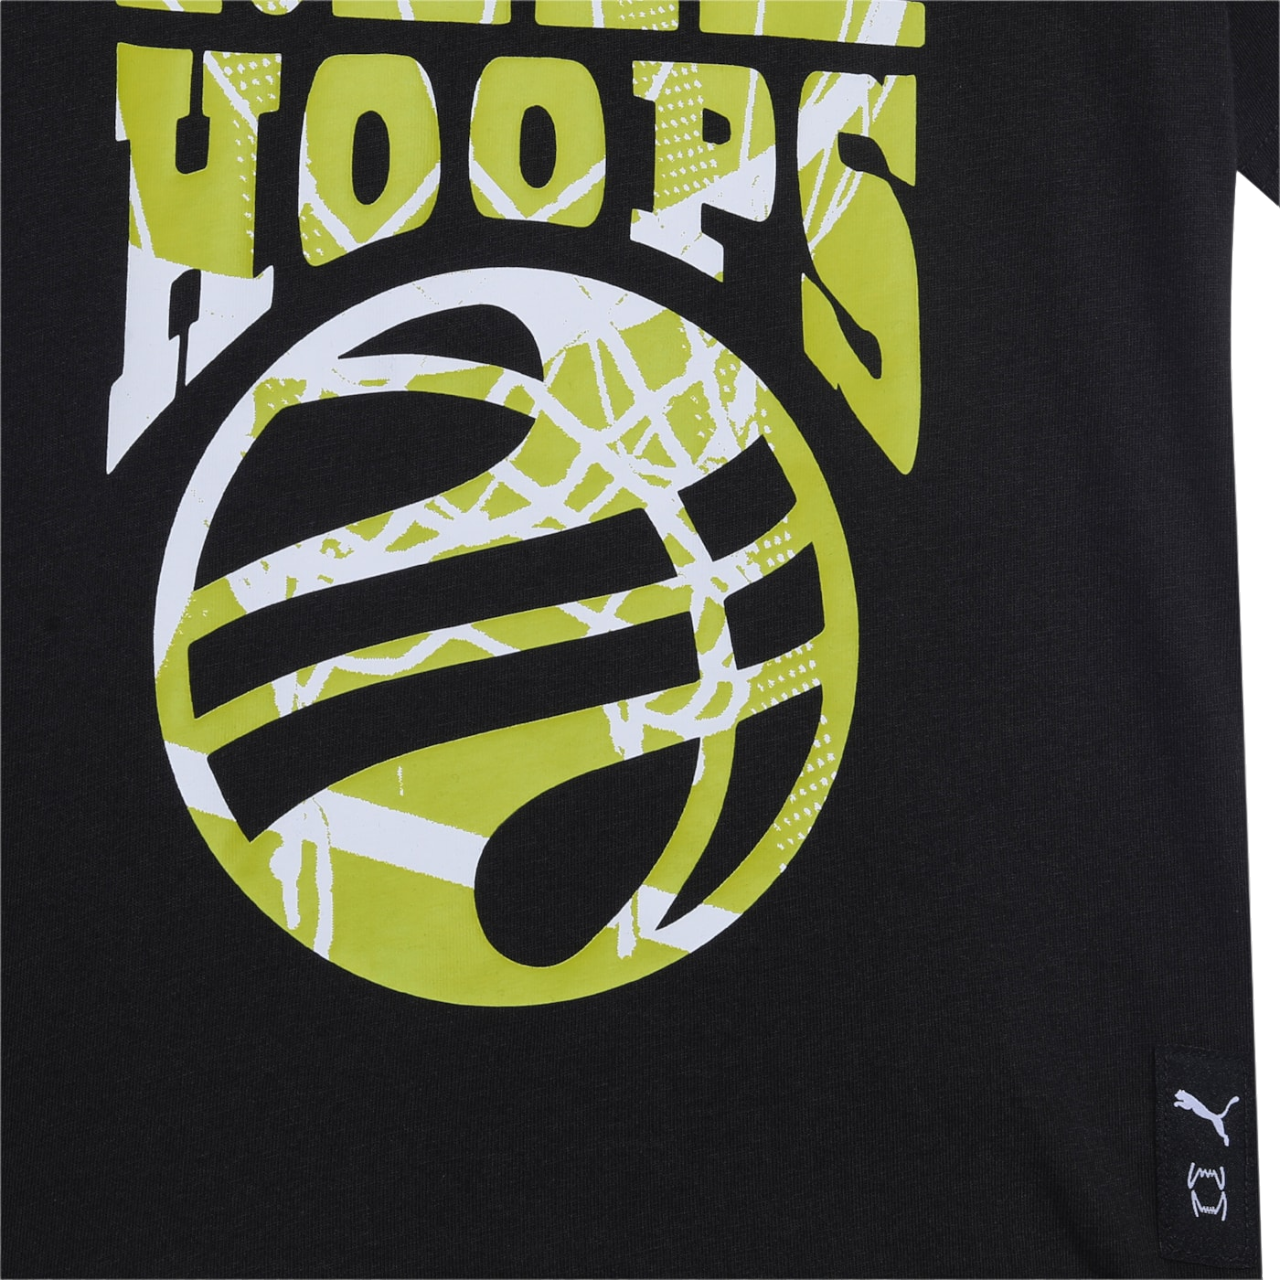 Puma Basketball Blueprint children&#39;s short sleeve t-shirt 679282 01 black